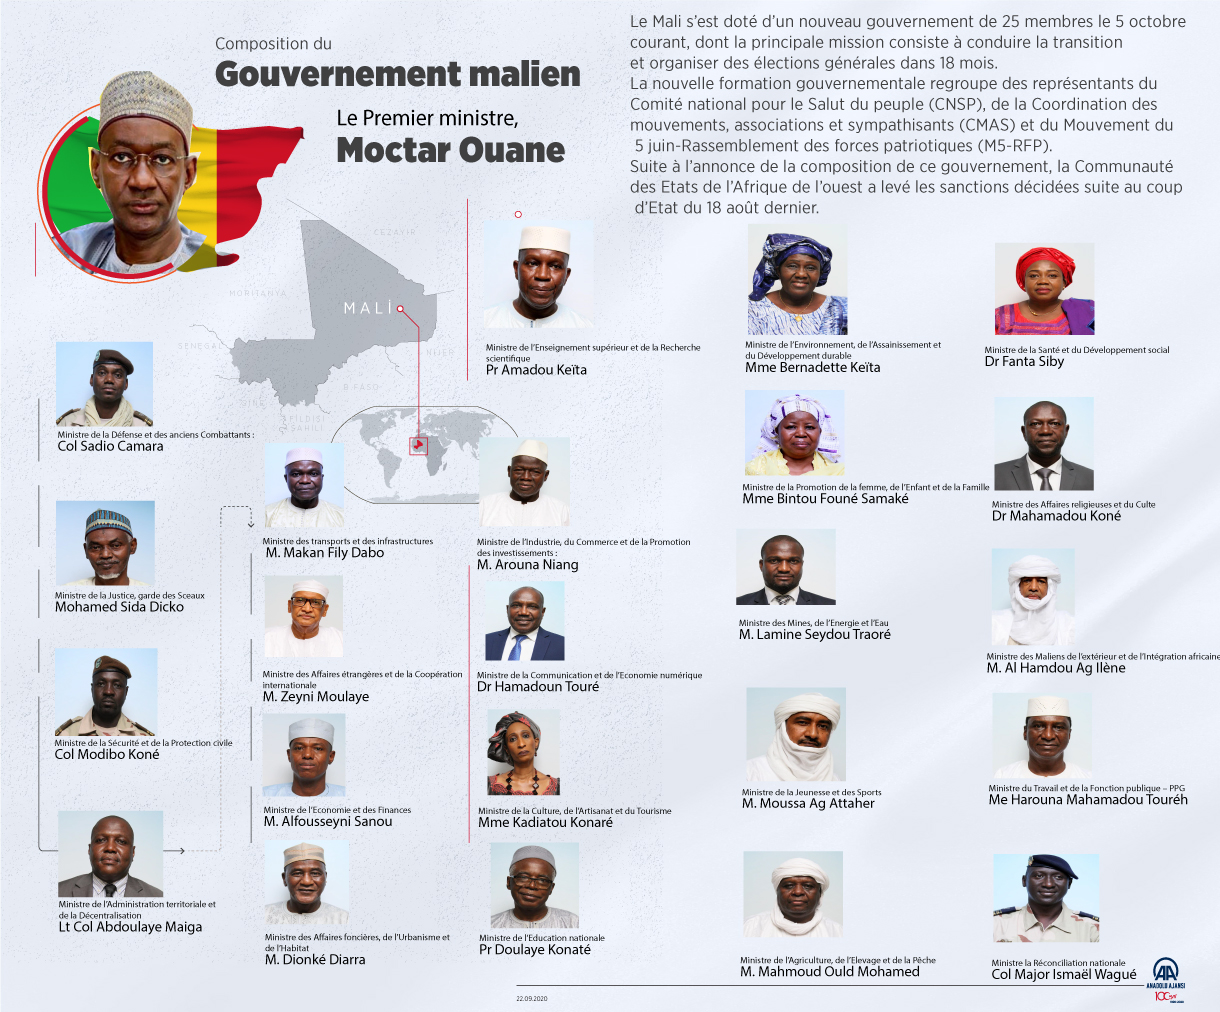 Le Mali s’est doté d’un nouveau gouvernement de 25 membres